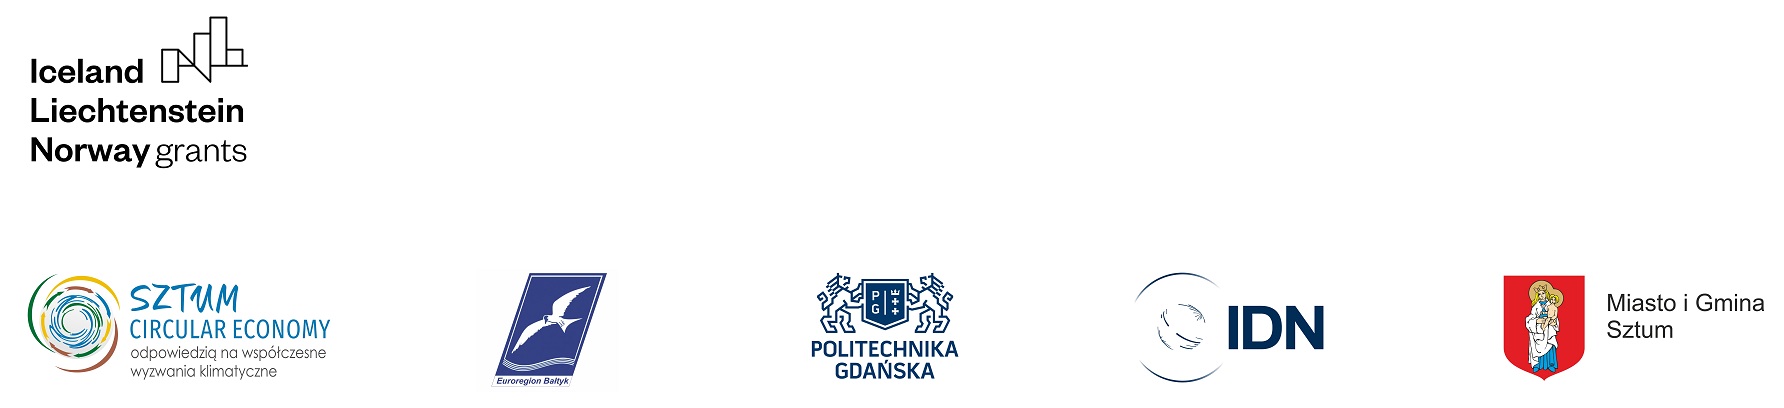 Grafika przedstawiająca logotypy: ILN Grants, Sztum Circular Economy, Euroregion Bałtyk, Politechnika Gdańska, IDN, Miasto i Gmina Sztum